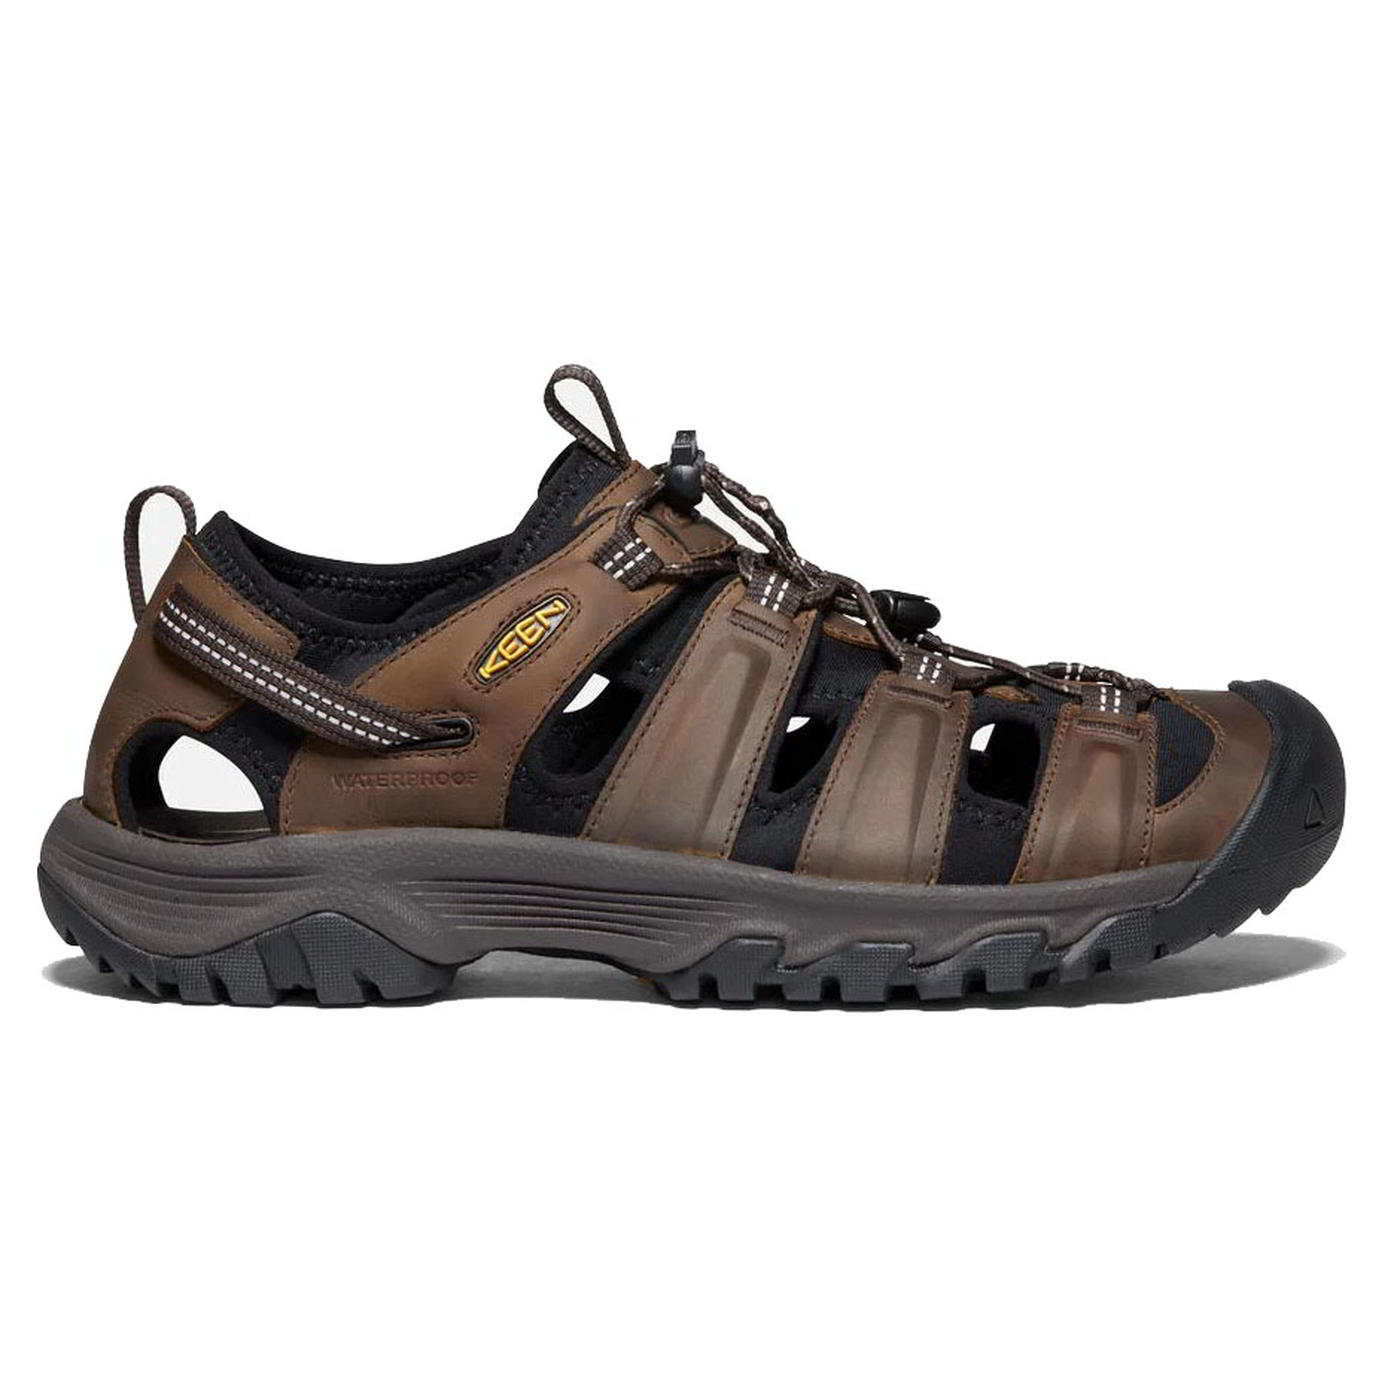 Keen Mens Targhee III Sandal Walking Hiking Shoes - UK 10.5 / US 11.5 Brown 2951